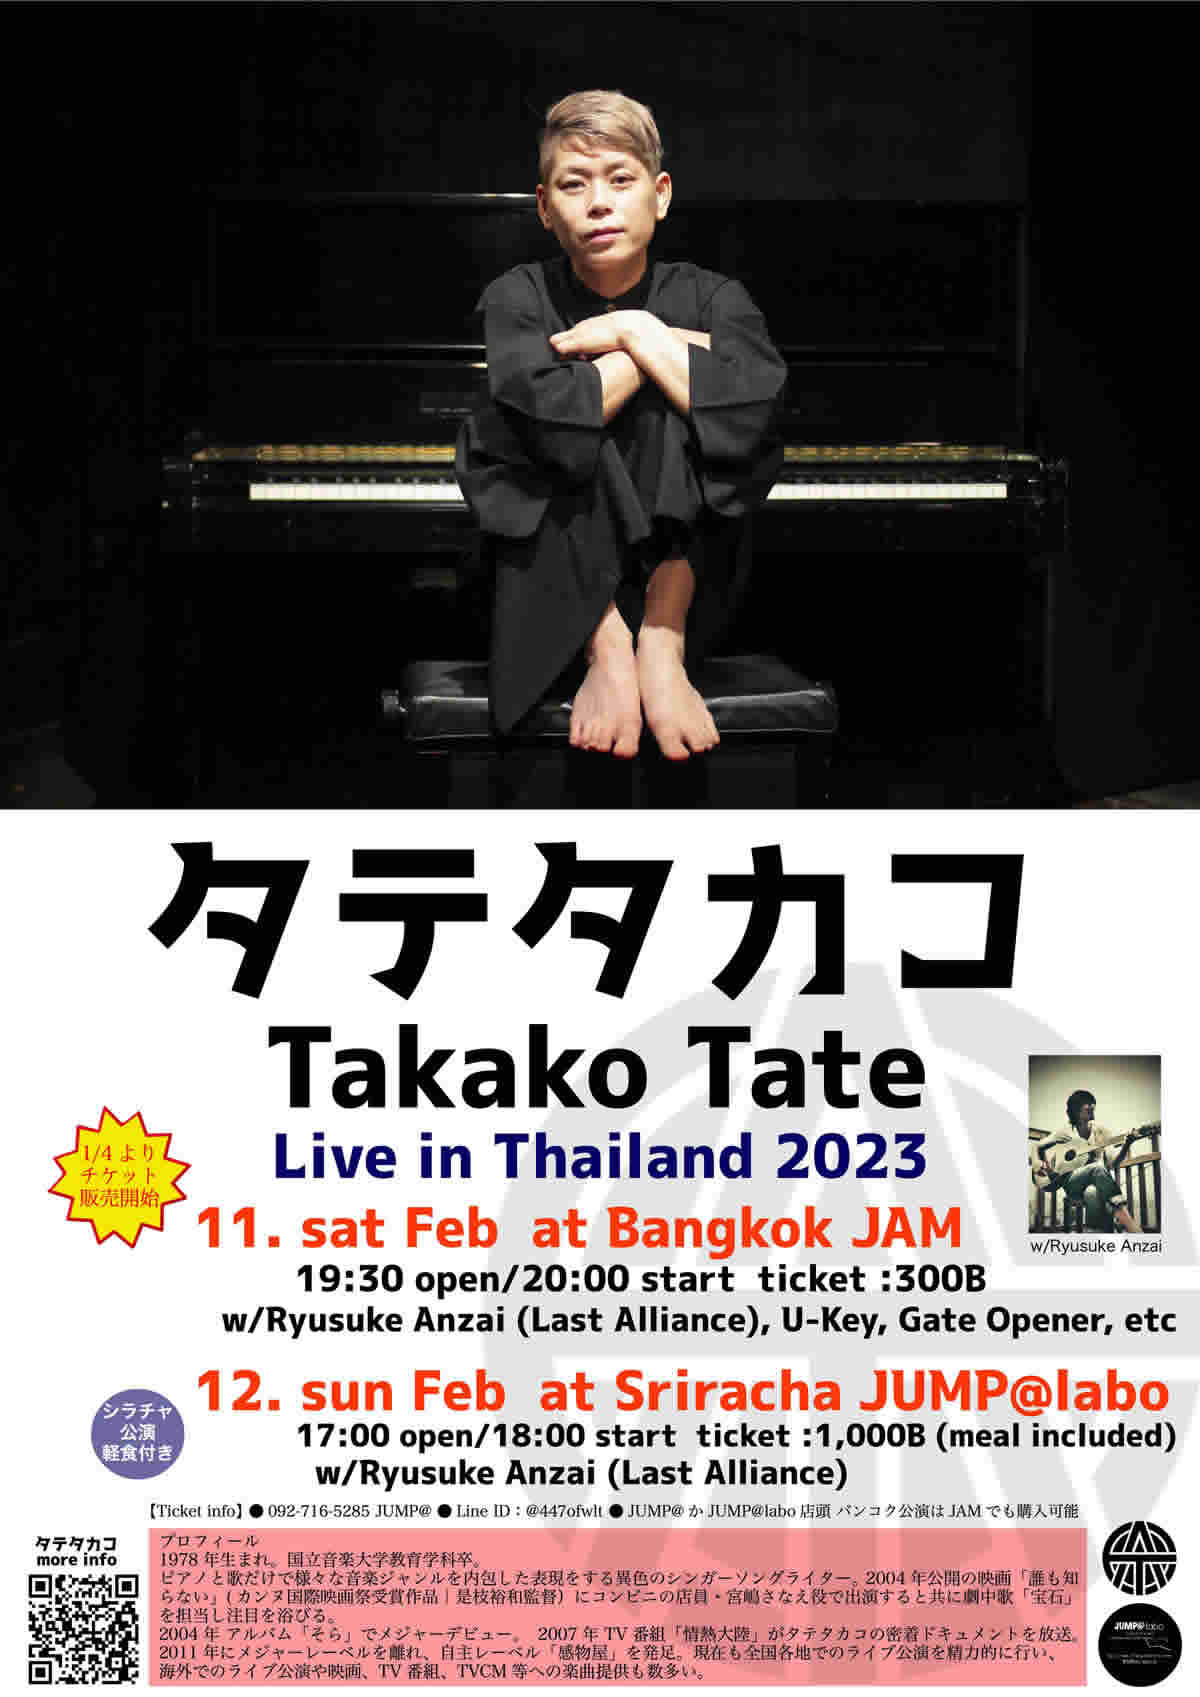 シンガーソングライター・タテタカコがタイ公演、バンコク 2月11日(土)、シラチャ 2月12日(日)